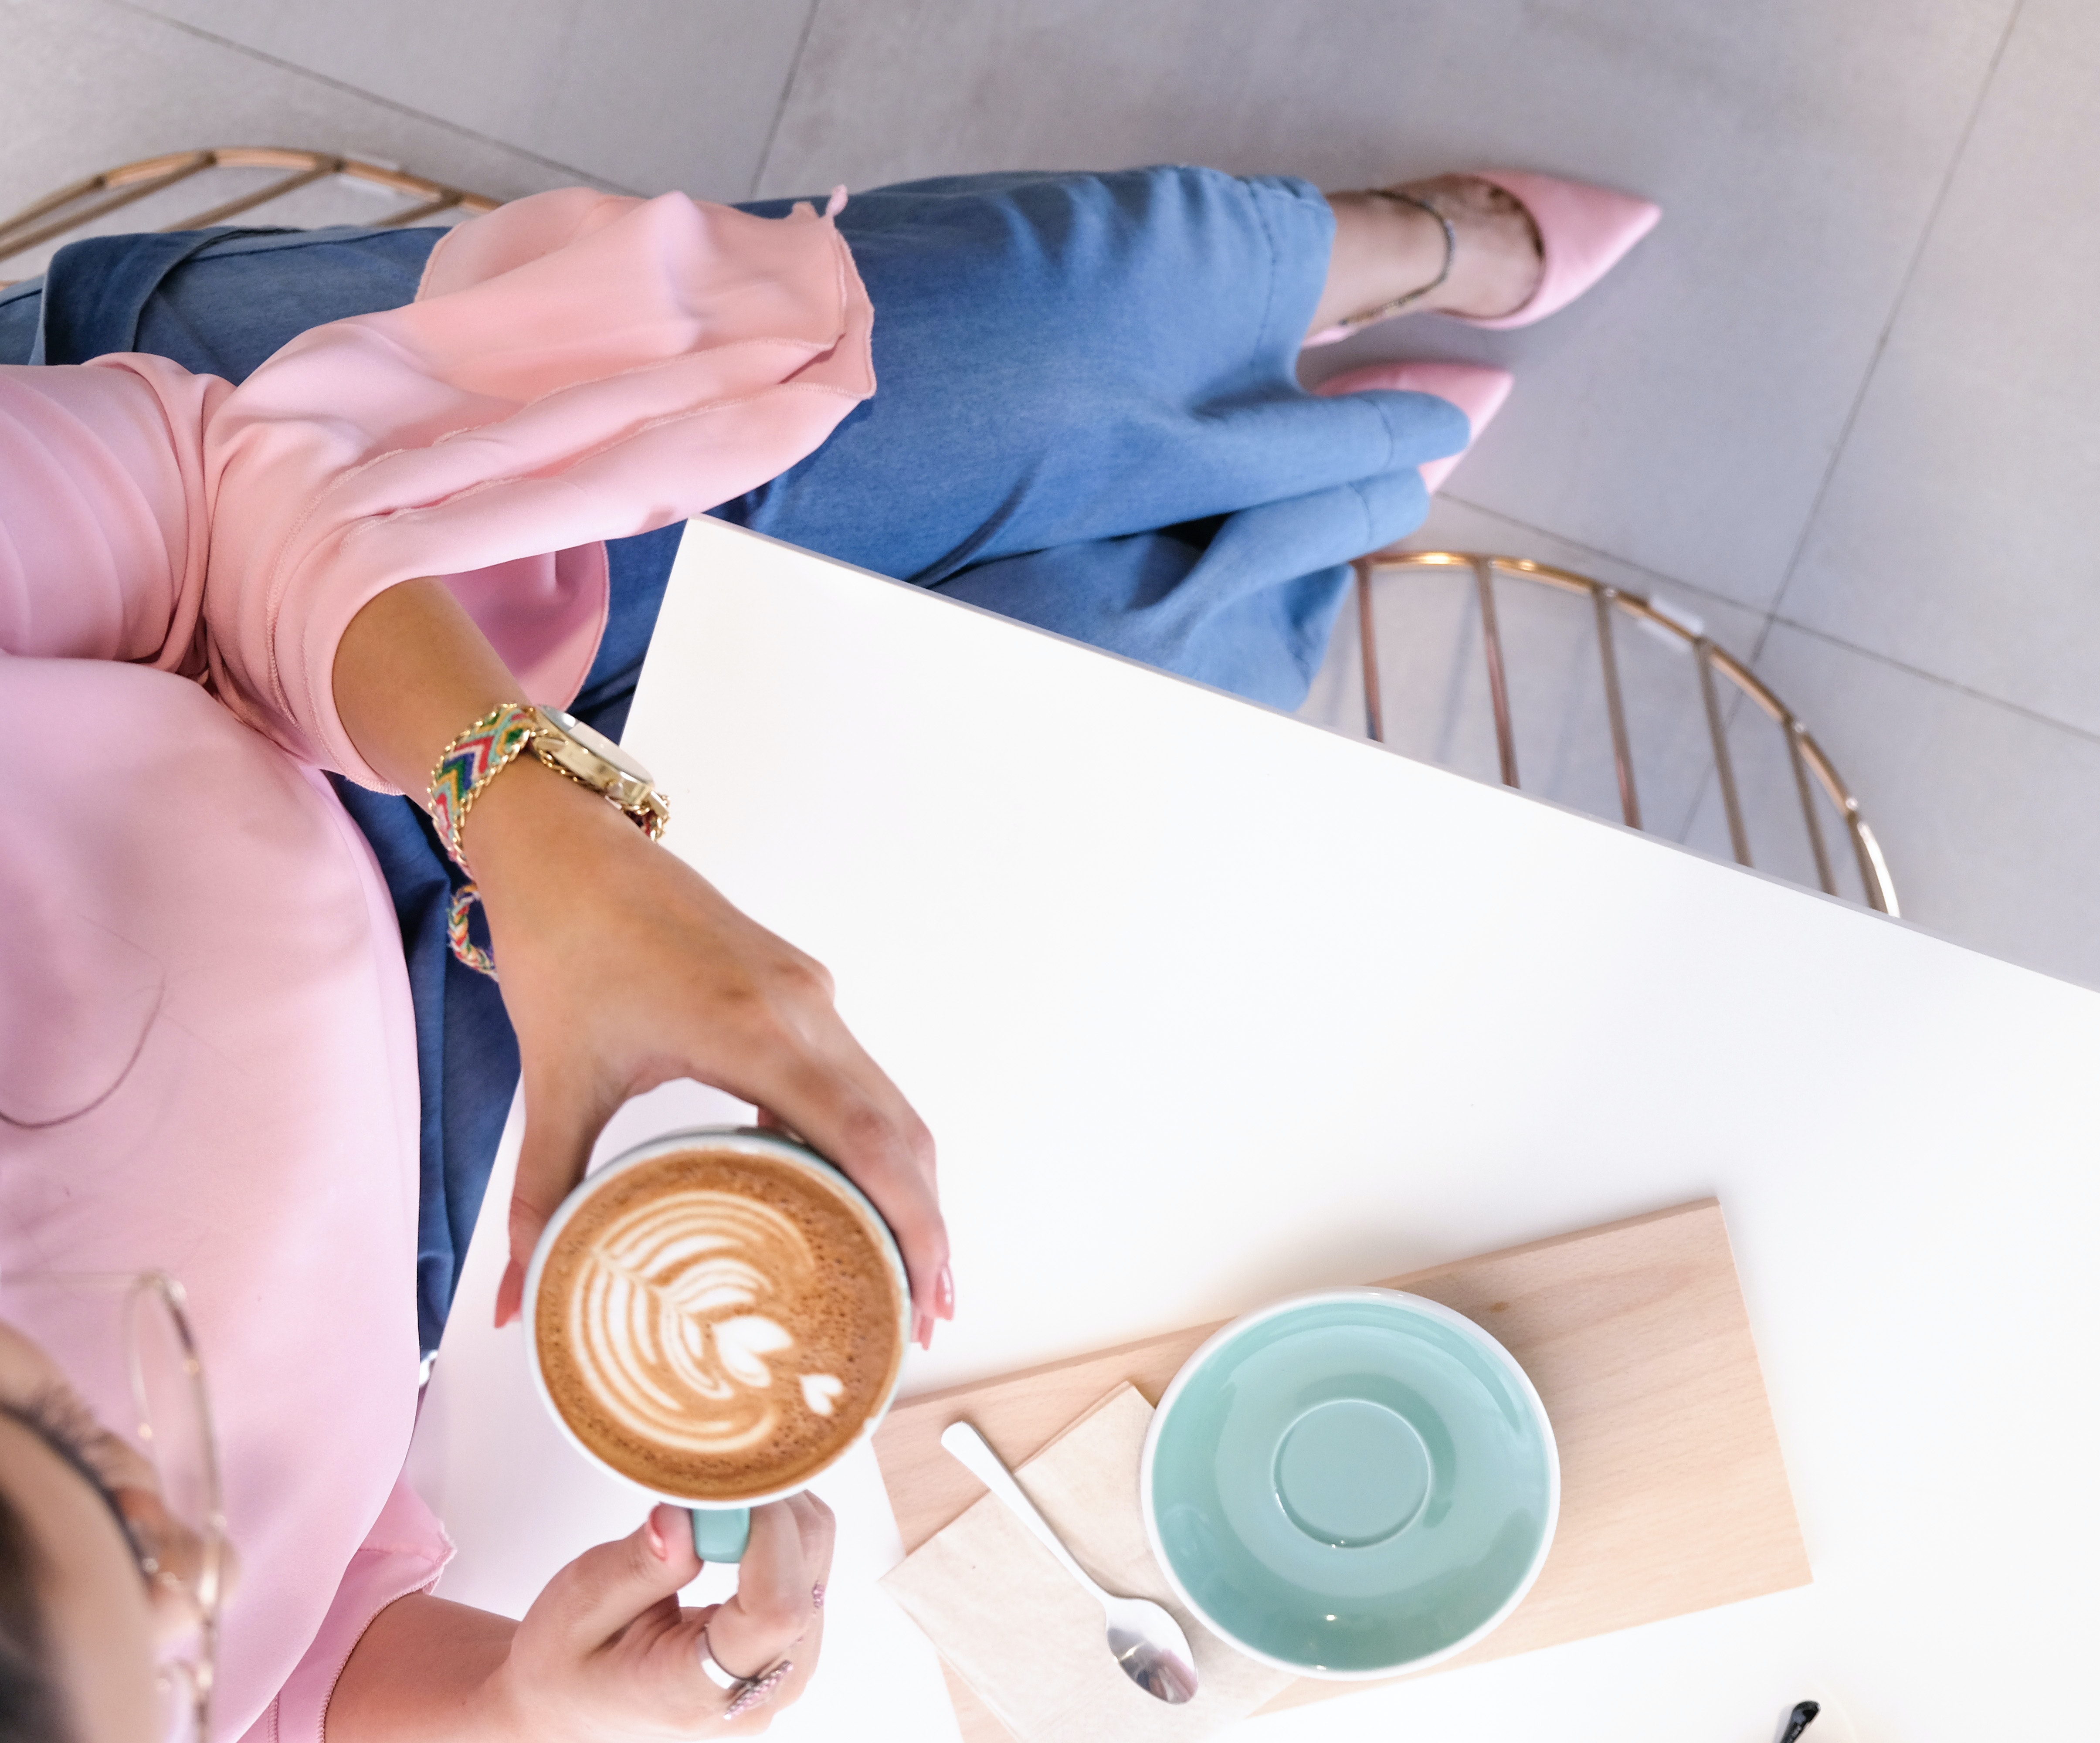 Αυτό το DIY αρωματικό χώρου με καφέ σε αναζωογονεί καθ' όλη τη διάρκεια της ημέρας